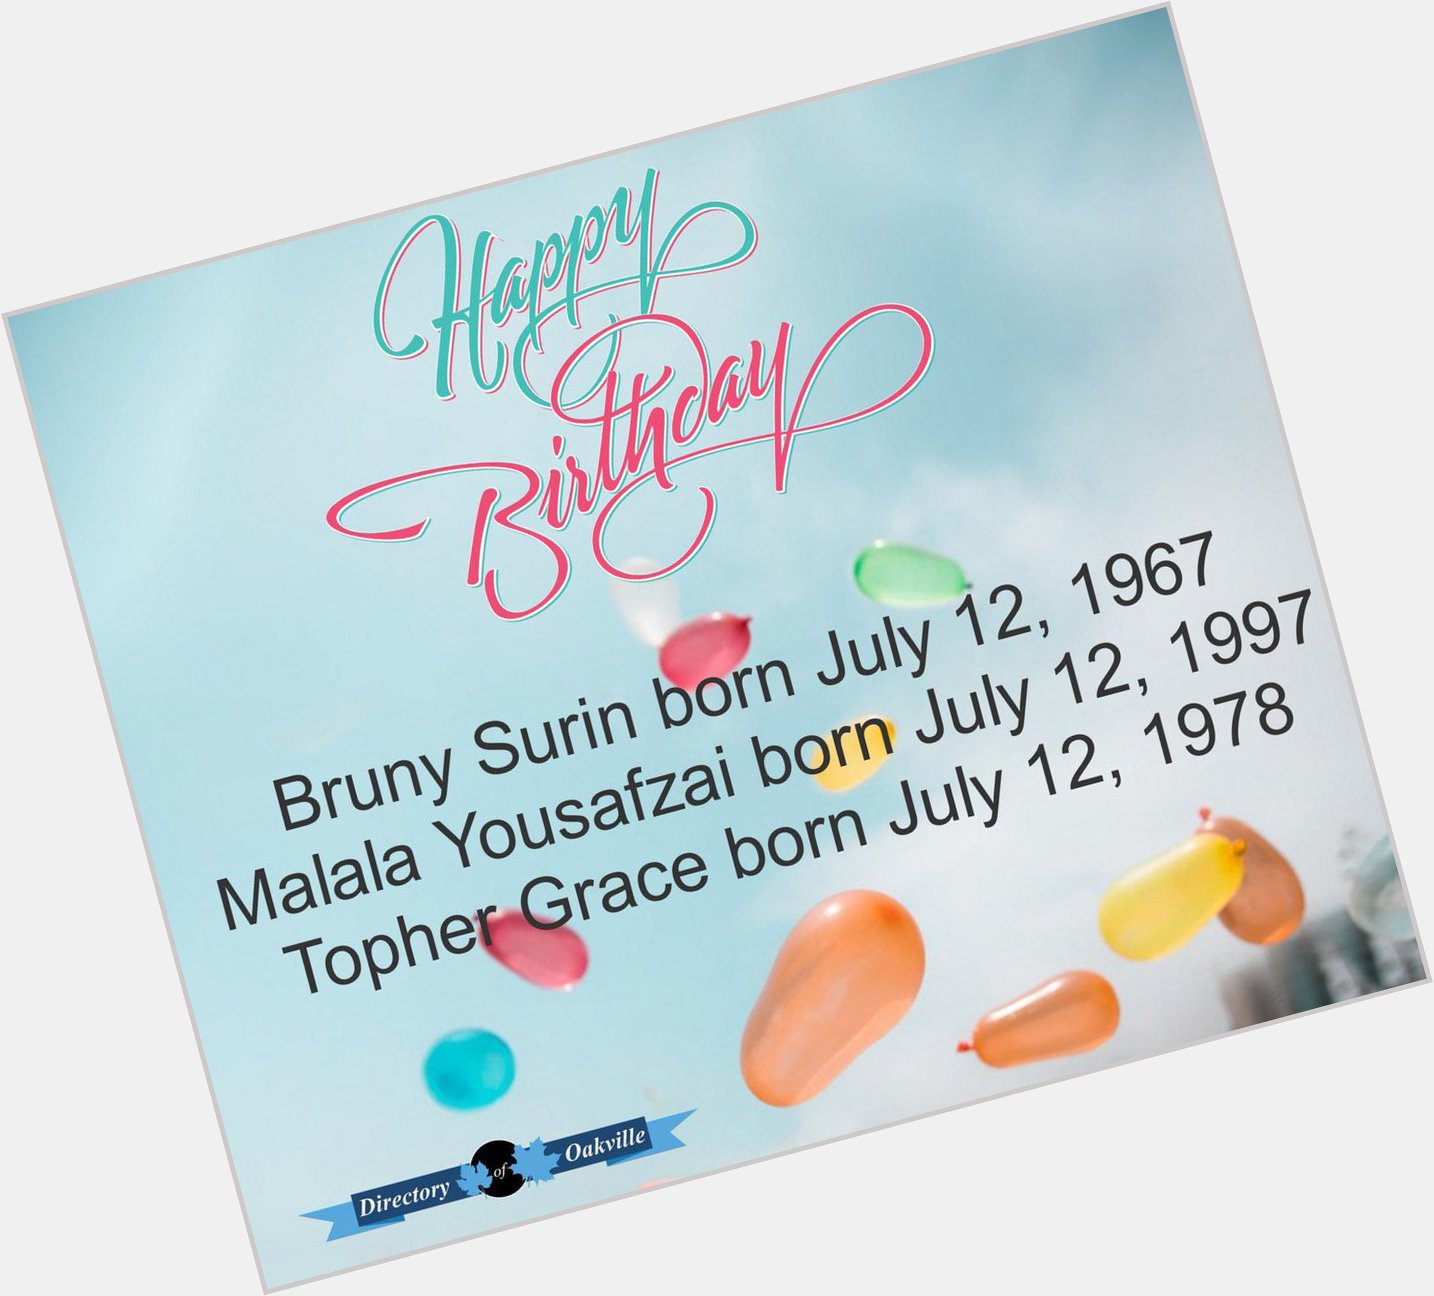 Happy Birthday!
Bruny Surin born July 12, 1967
Malala Yousafzai born July 12, 1997
Topher Grace born July 12, 1978 